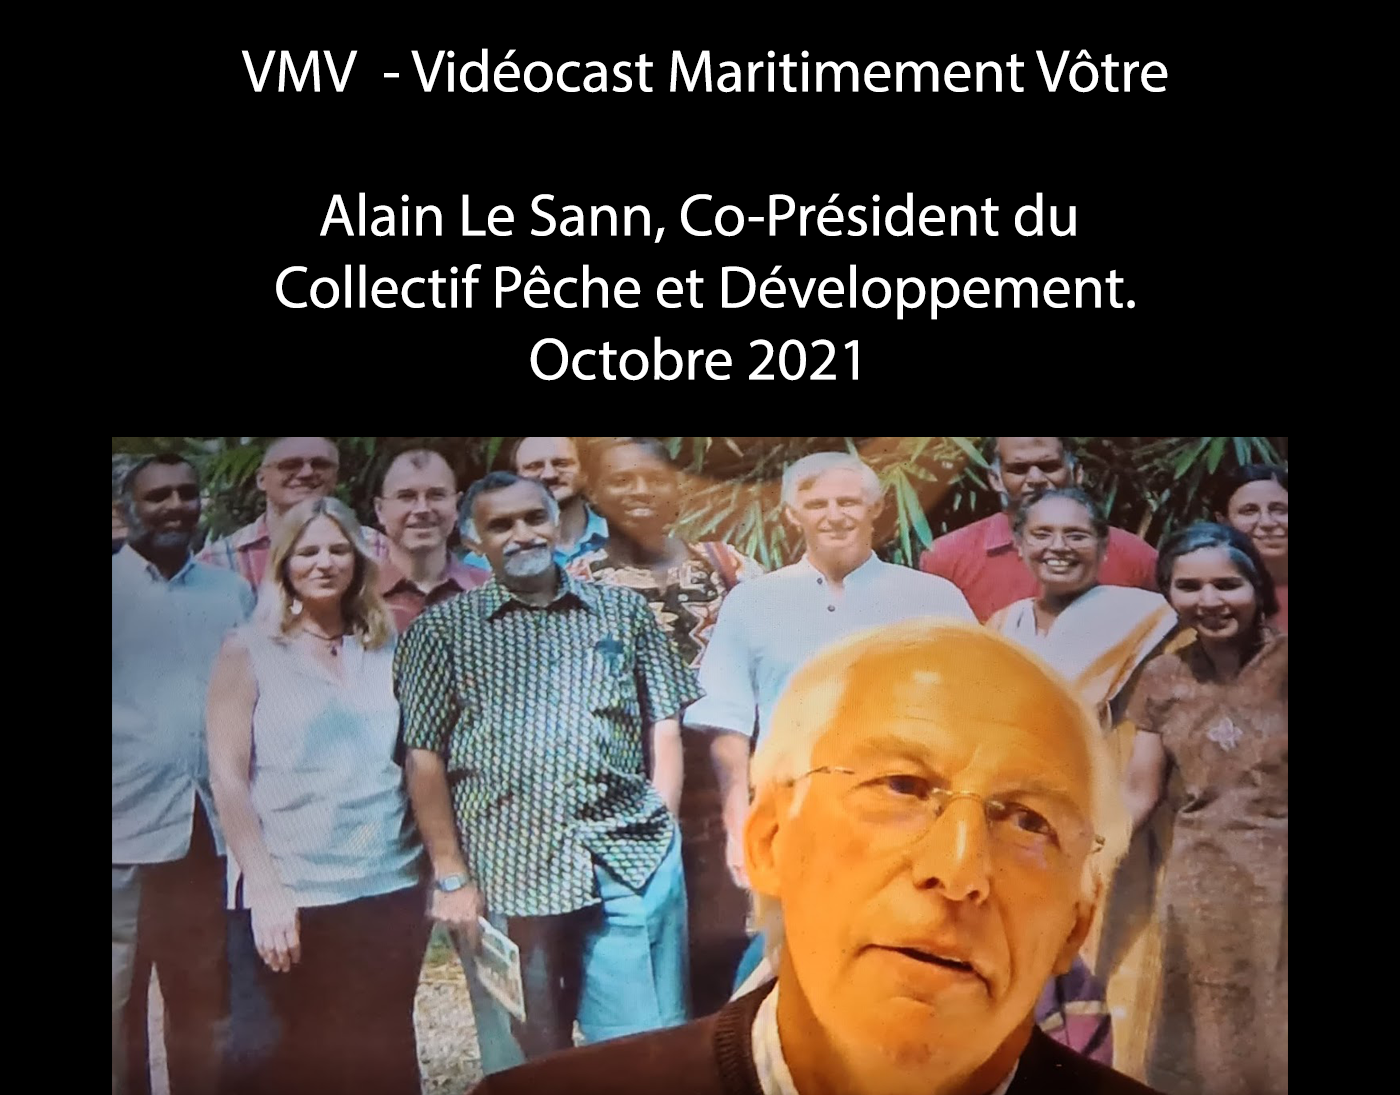 Alain Le Sann, Co-Président du collectif Pêche et Développement.